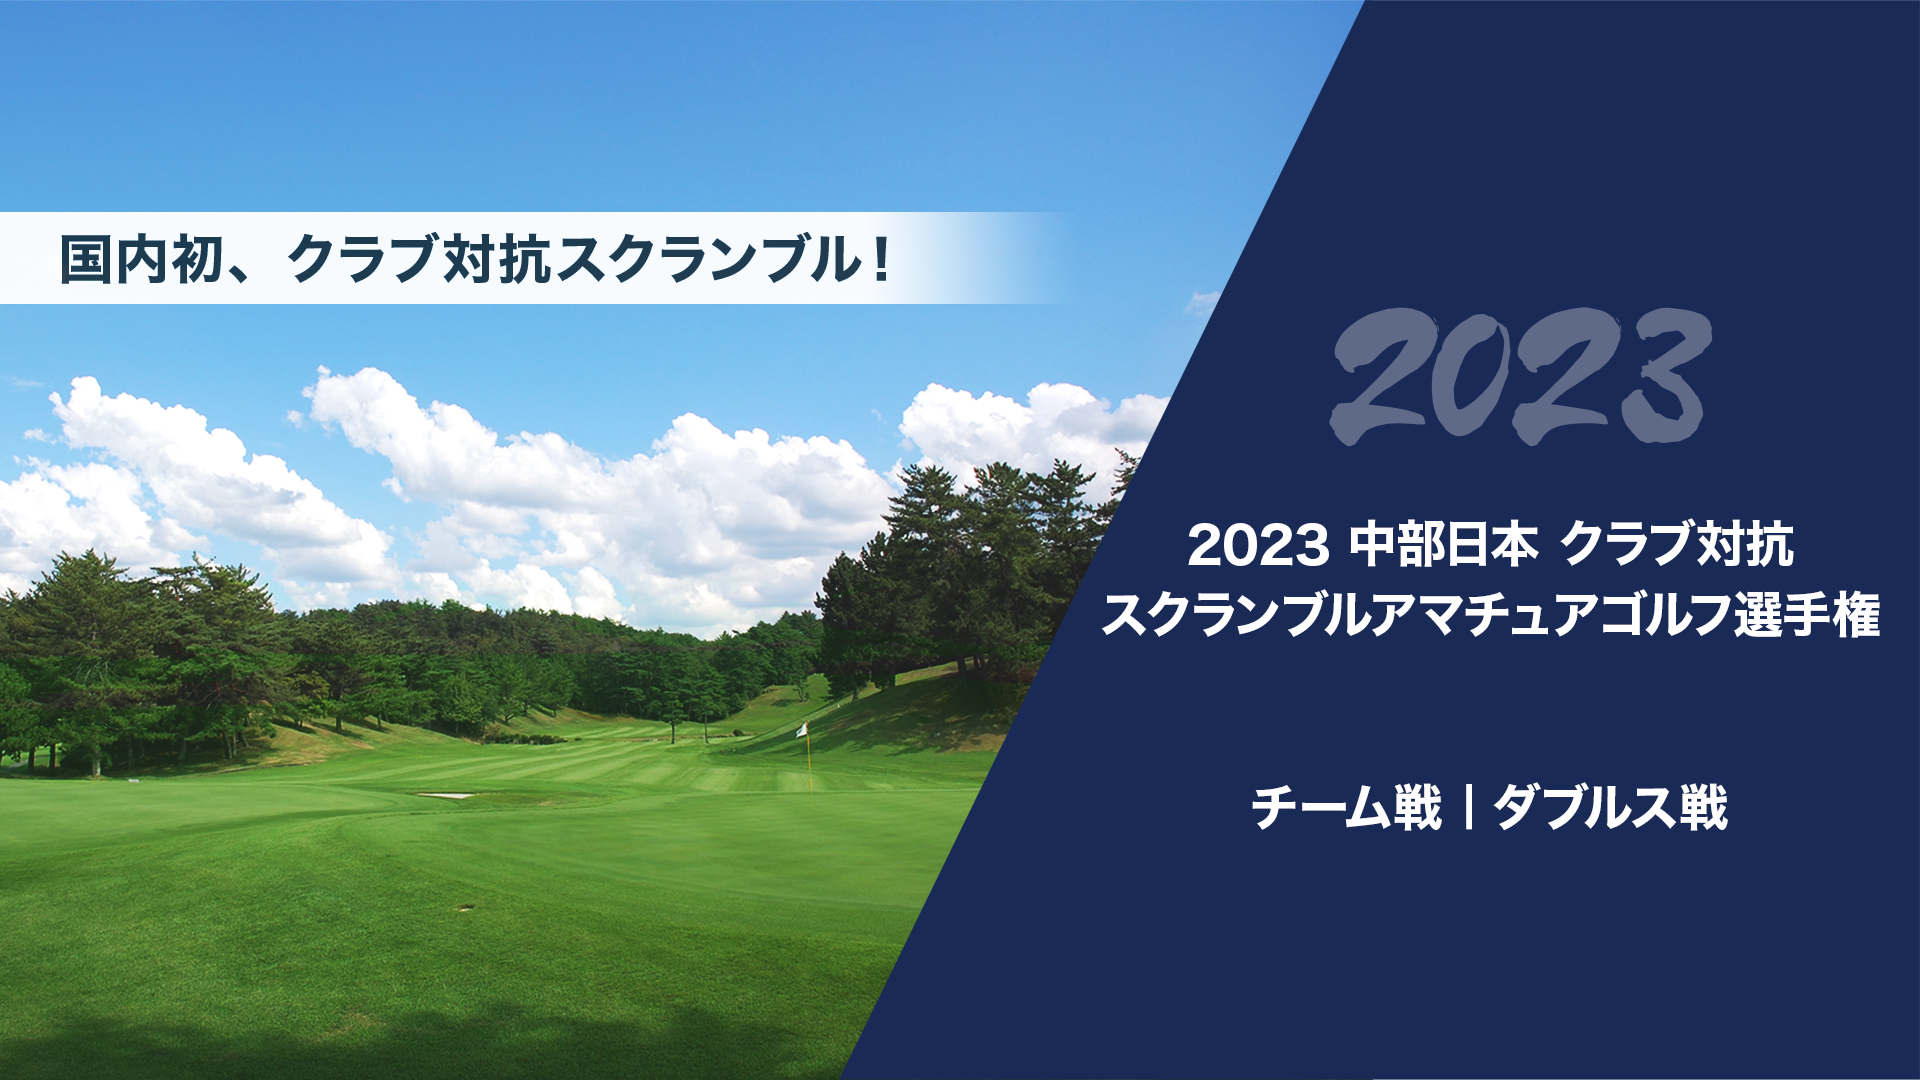 2023中部日本クラブ対抗スクランブルアマチュアゴルフ選手権